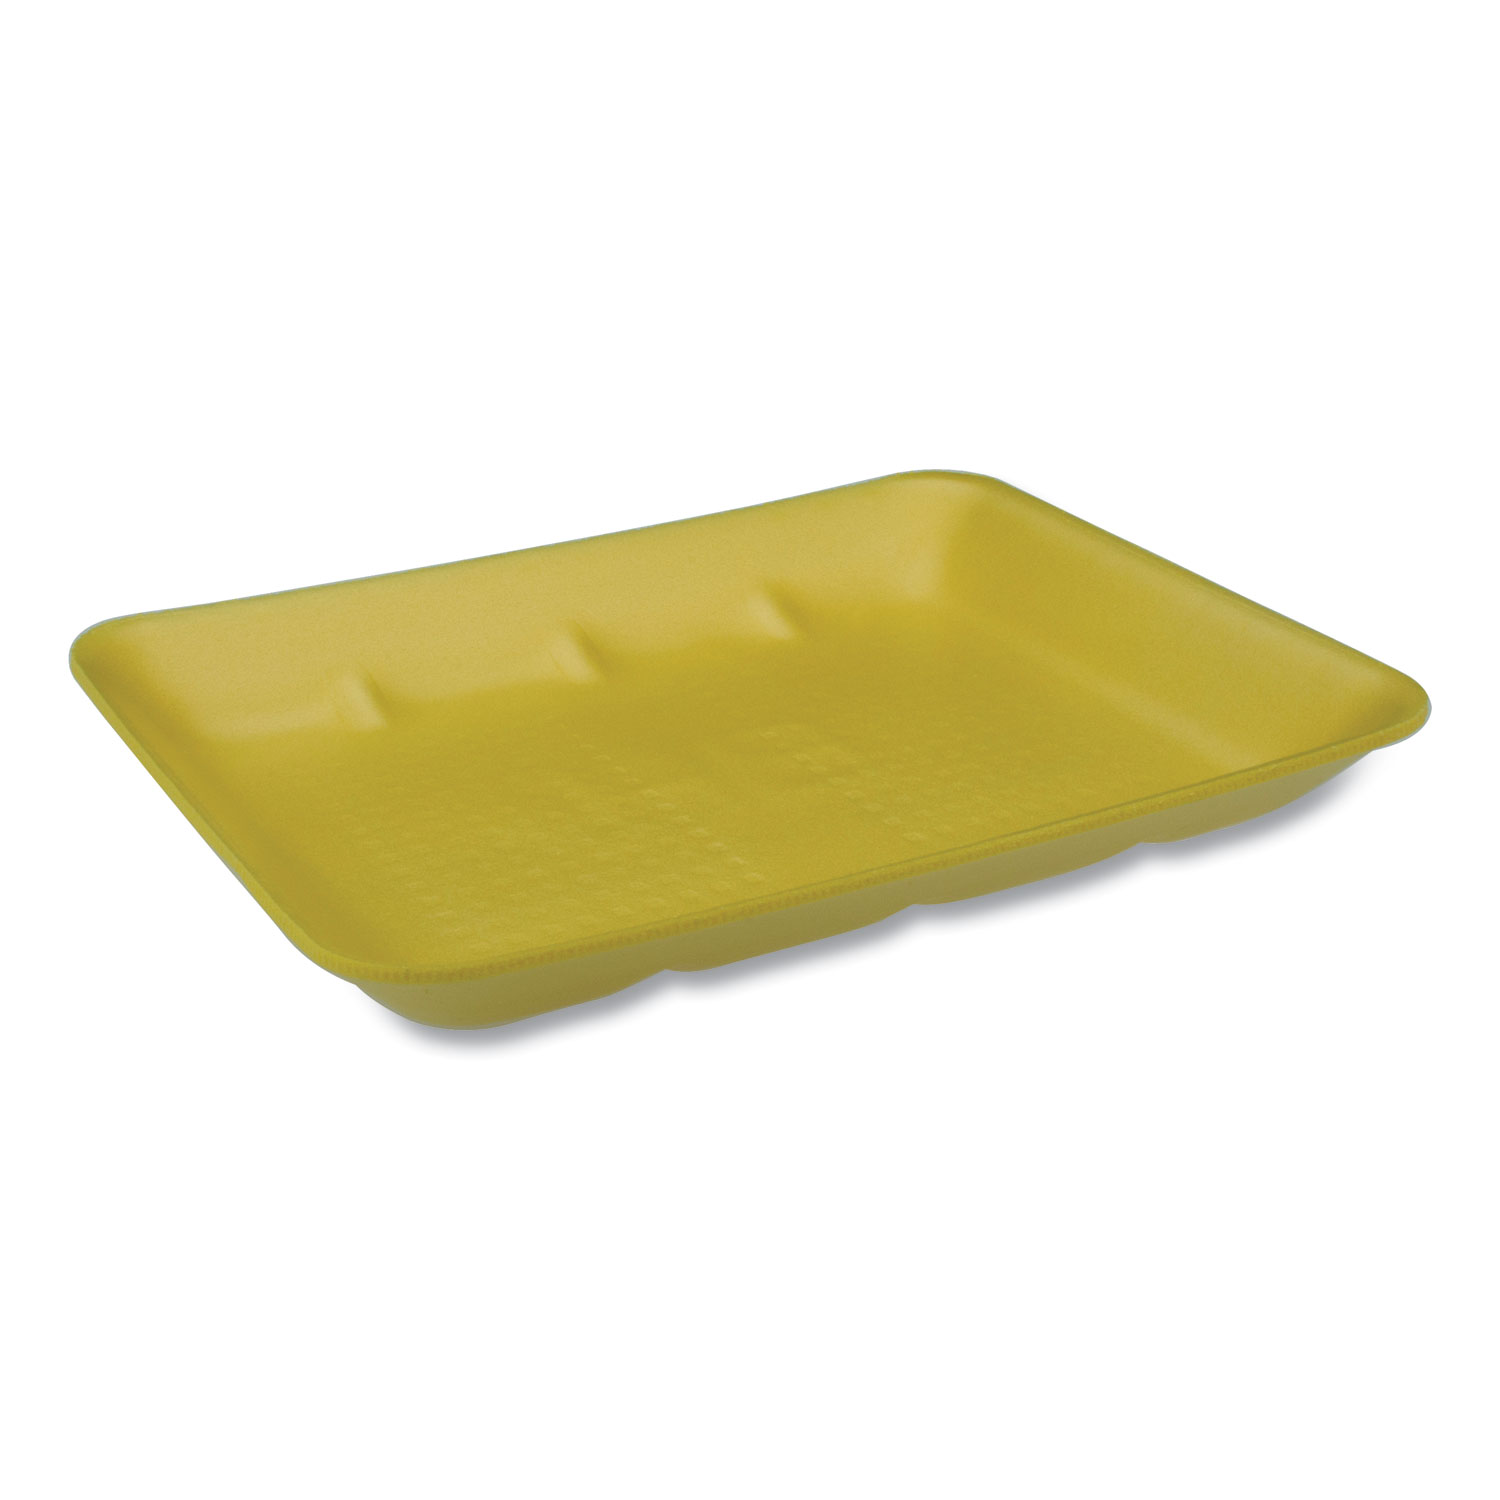  Pactiv 0TF3008H0000 Supermarket Tray, #8H Heavy, 10.58 x 8.33 x 1.18, Yellow, 400/Carton (PCT0TF3008H0000) 